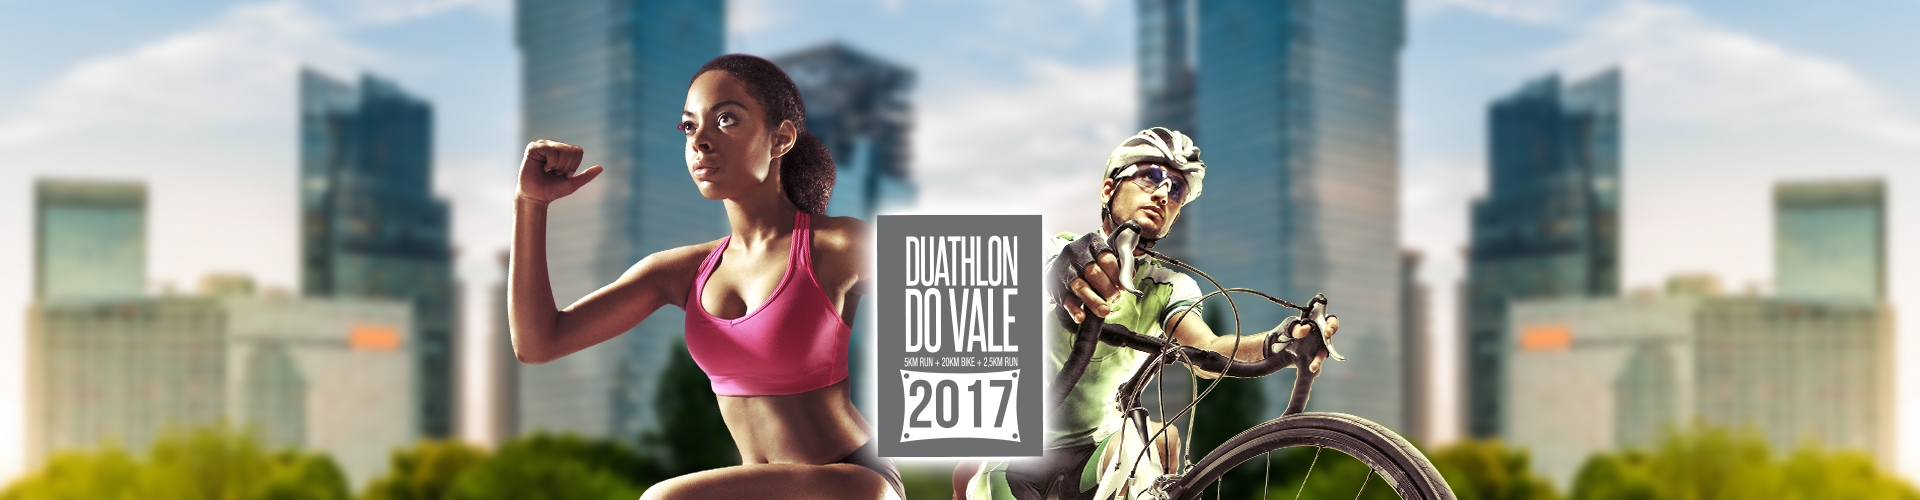 7º Duathlon do Vale 2017 (Etapa 1)